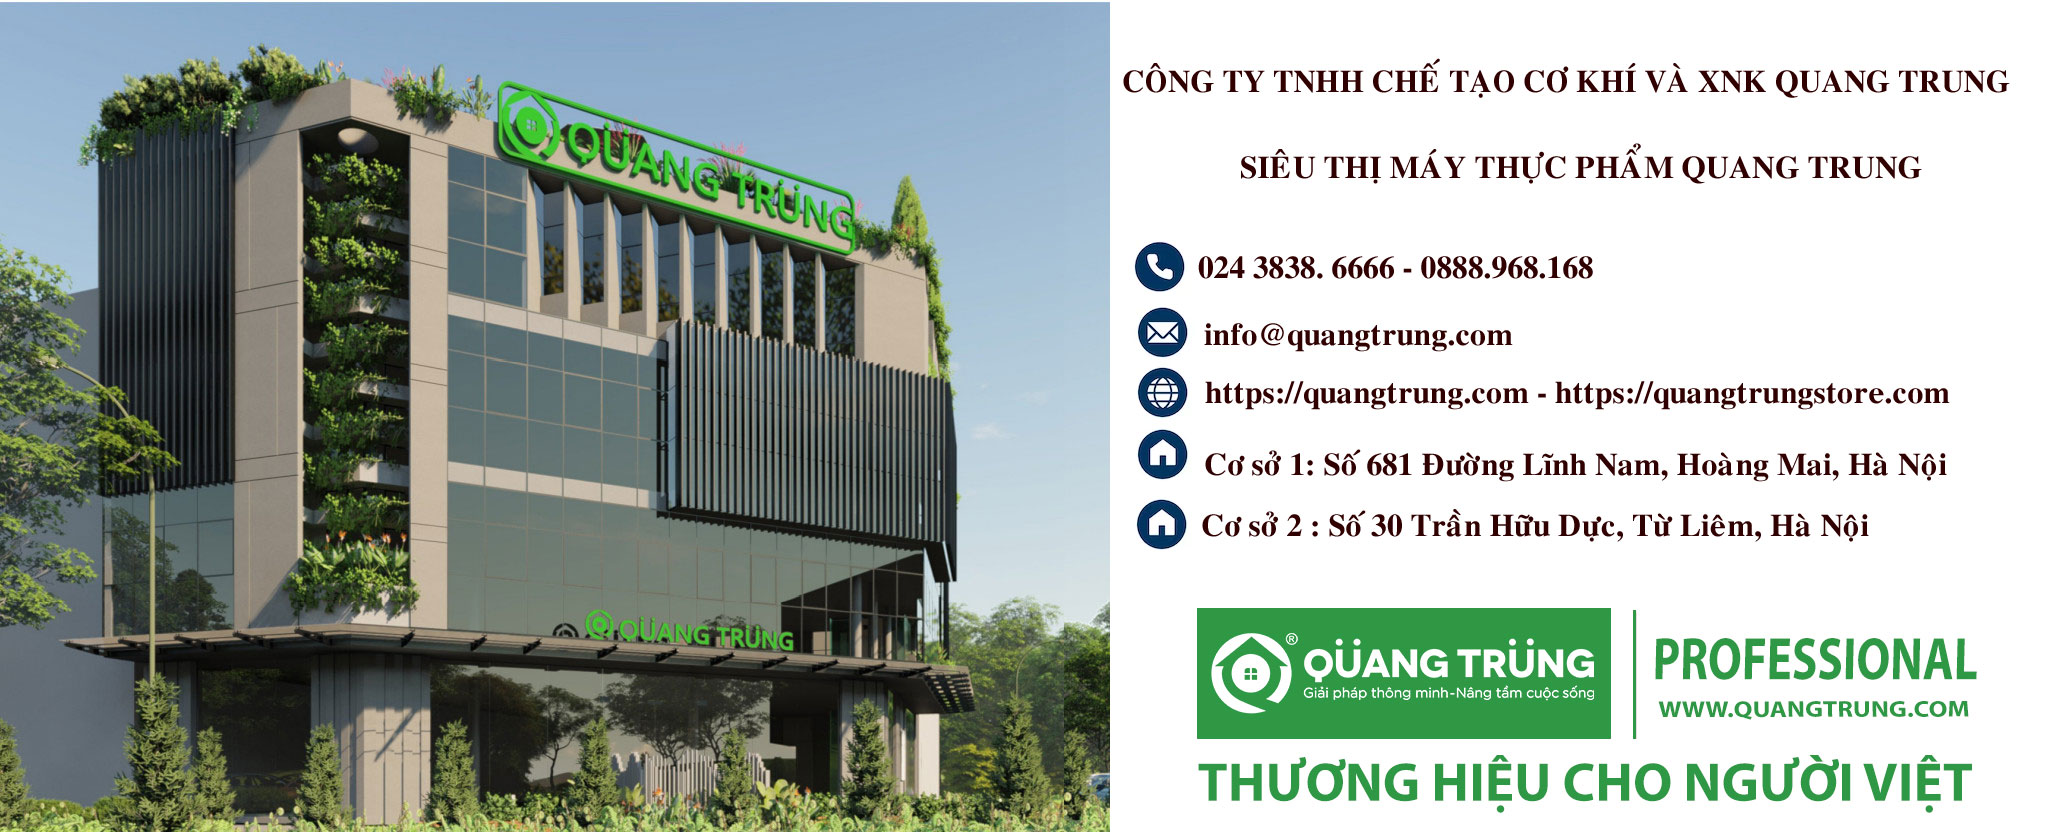 Siêu thị máy chế biến thực phẩm Quang Trung - Địa điểm uy tín bán máy thái thịt chính hãng tại Hà Nội